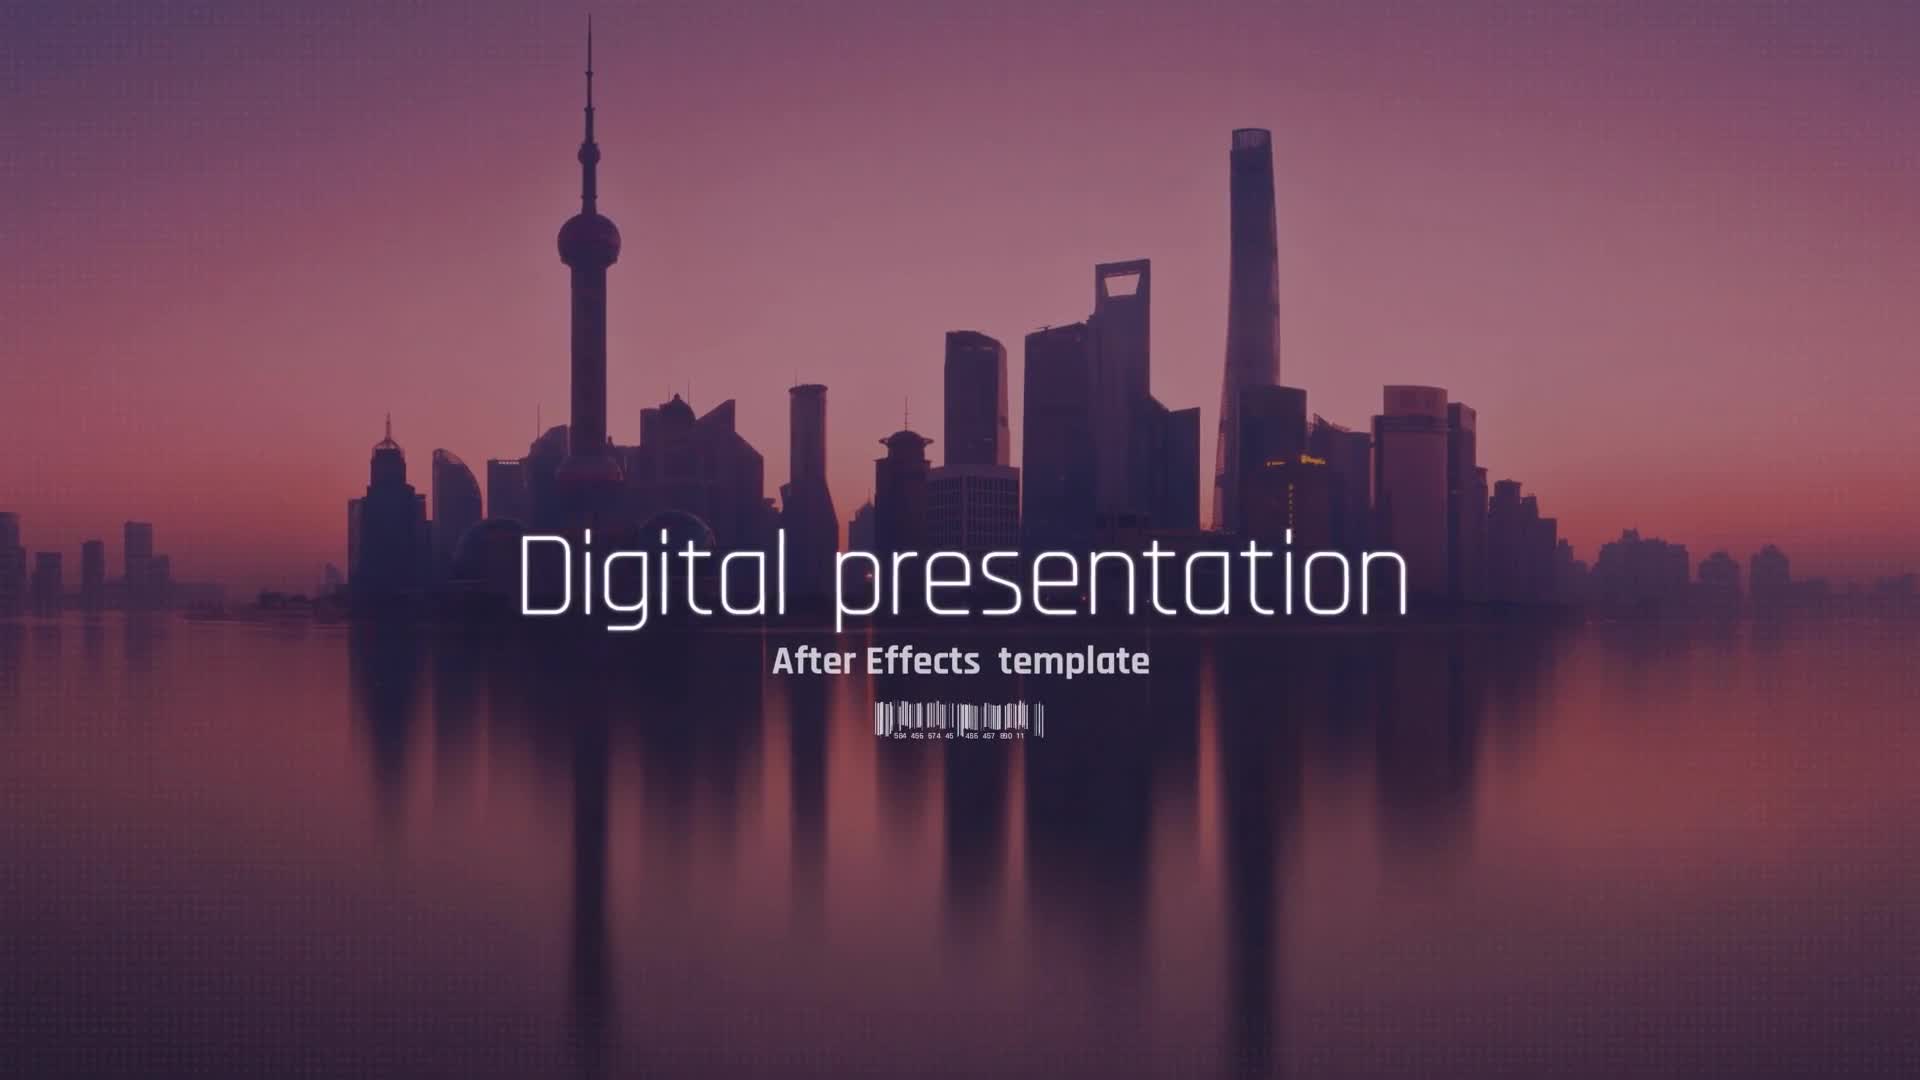 Digital Presentation Digital Slideshow Videohive 23196976 After Effects Image 1